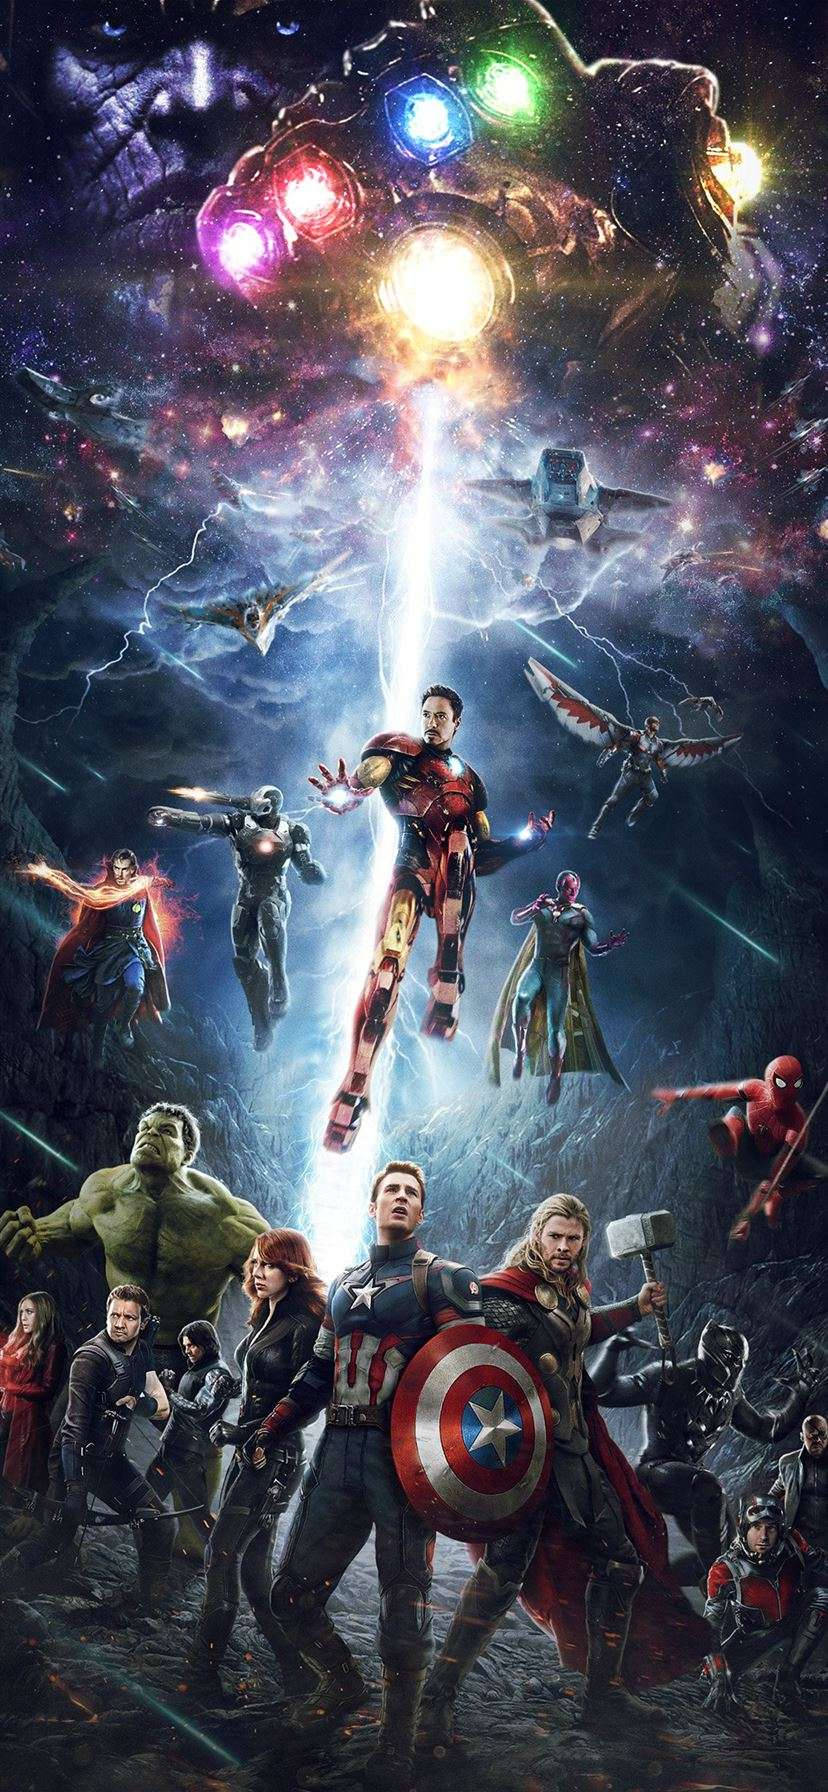 Avengersbakgrundsbild För Iphone Med Infinity Gauntlet. Wallpaper